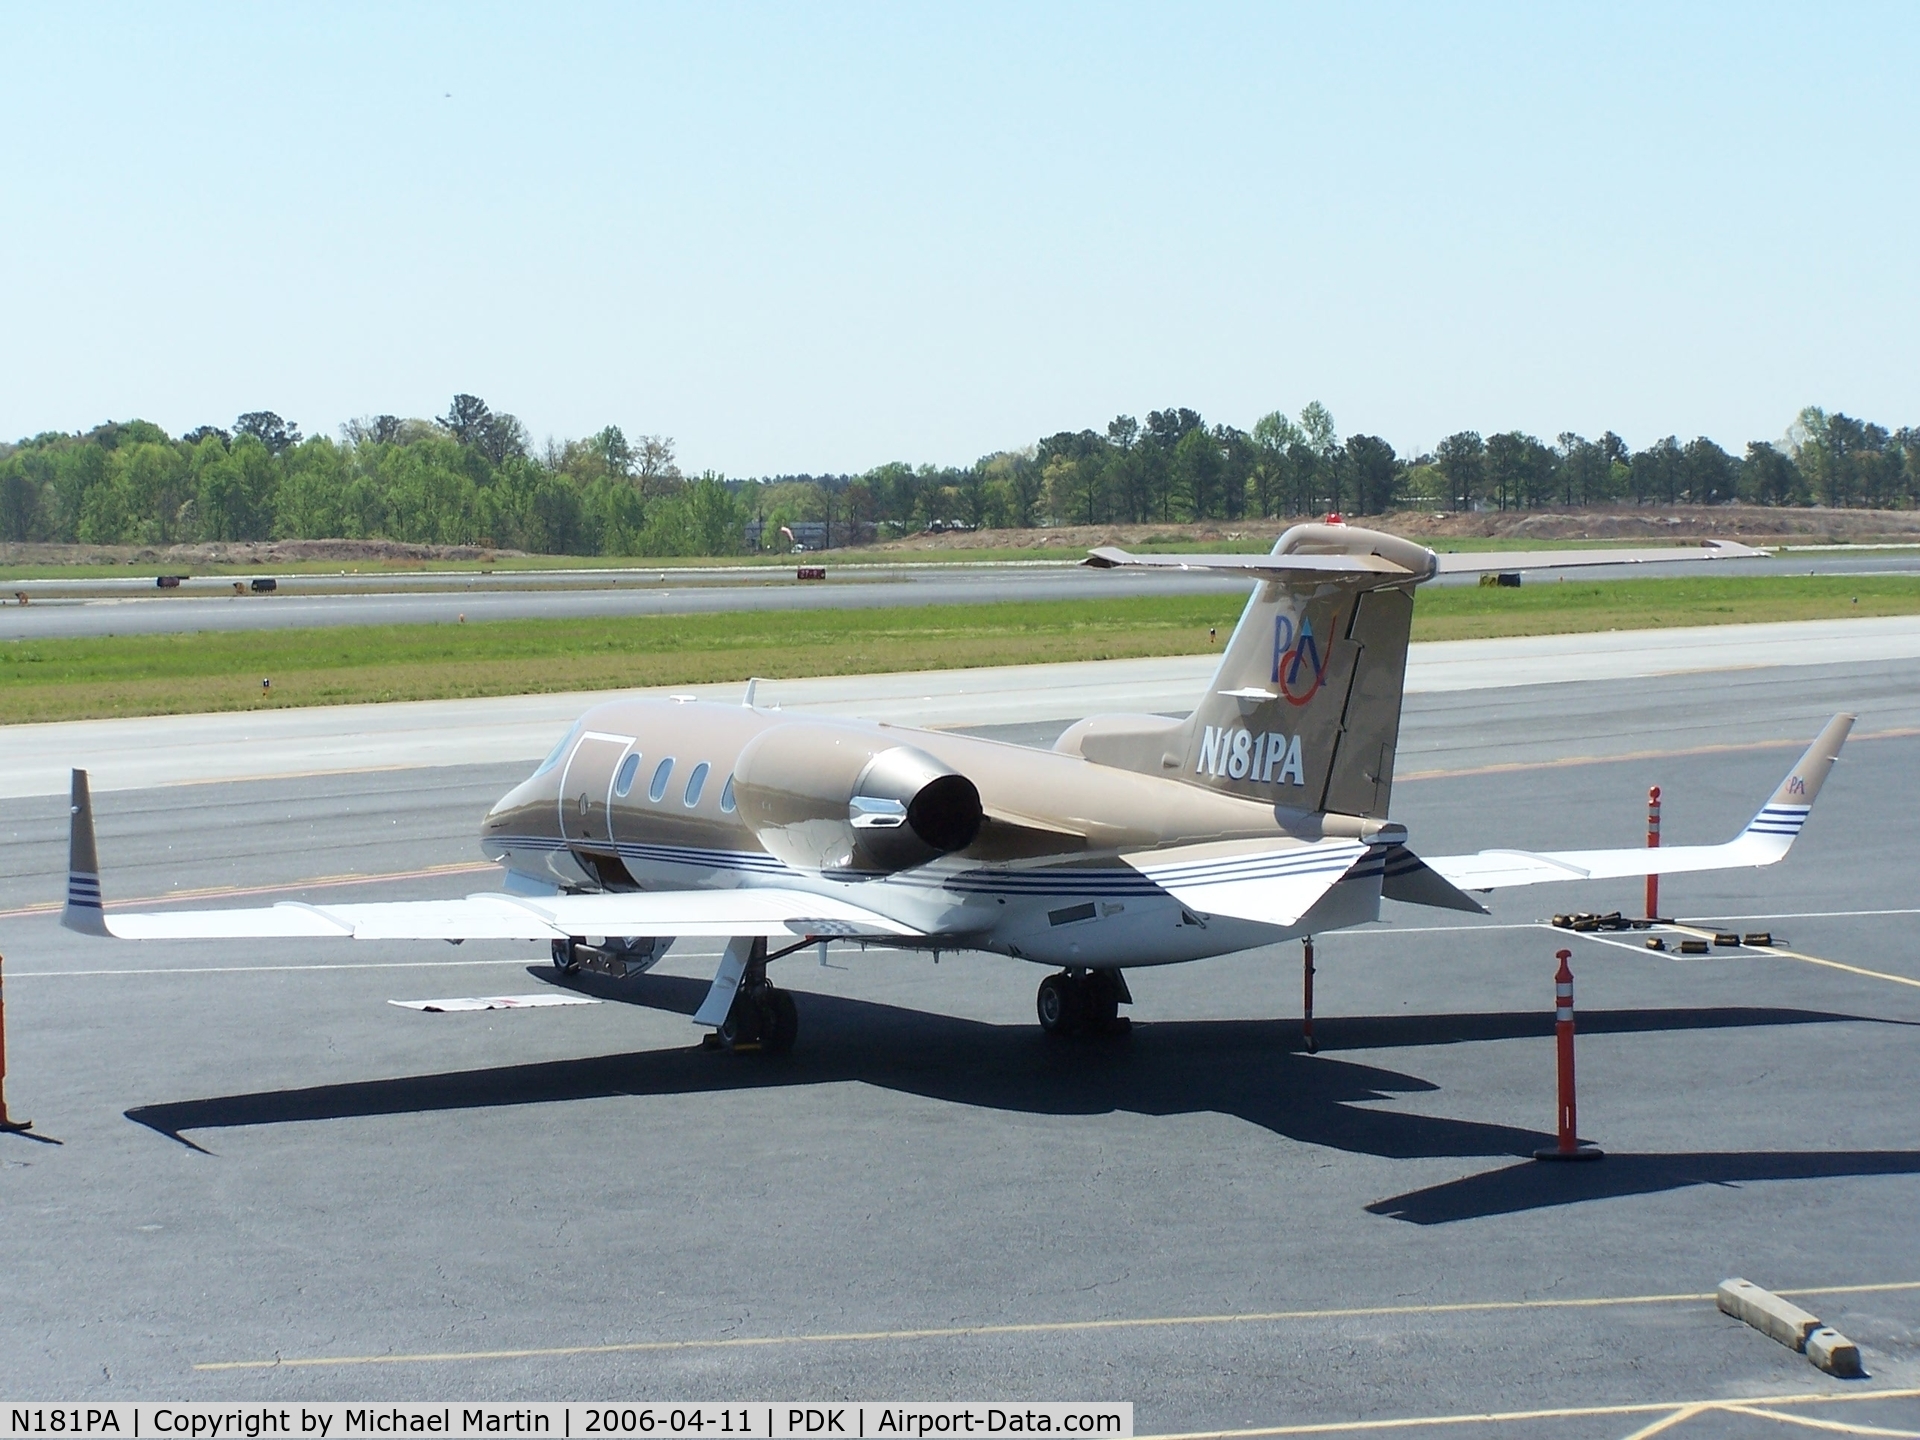 N181PA, 1998 Learjet Inc 31A C/N 31-156, Pinnacle Air Service @ Mercury Air Center